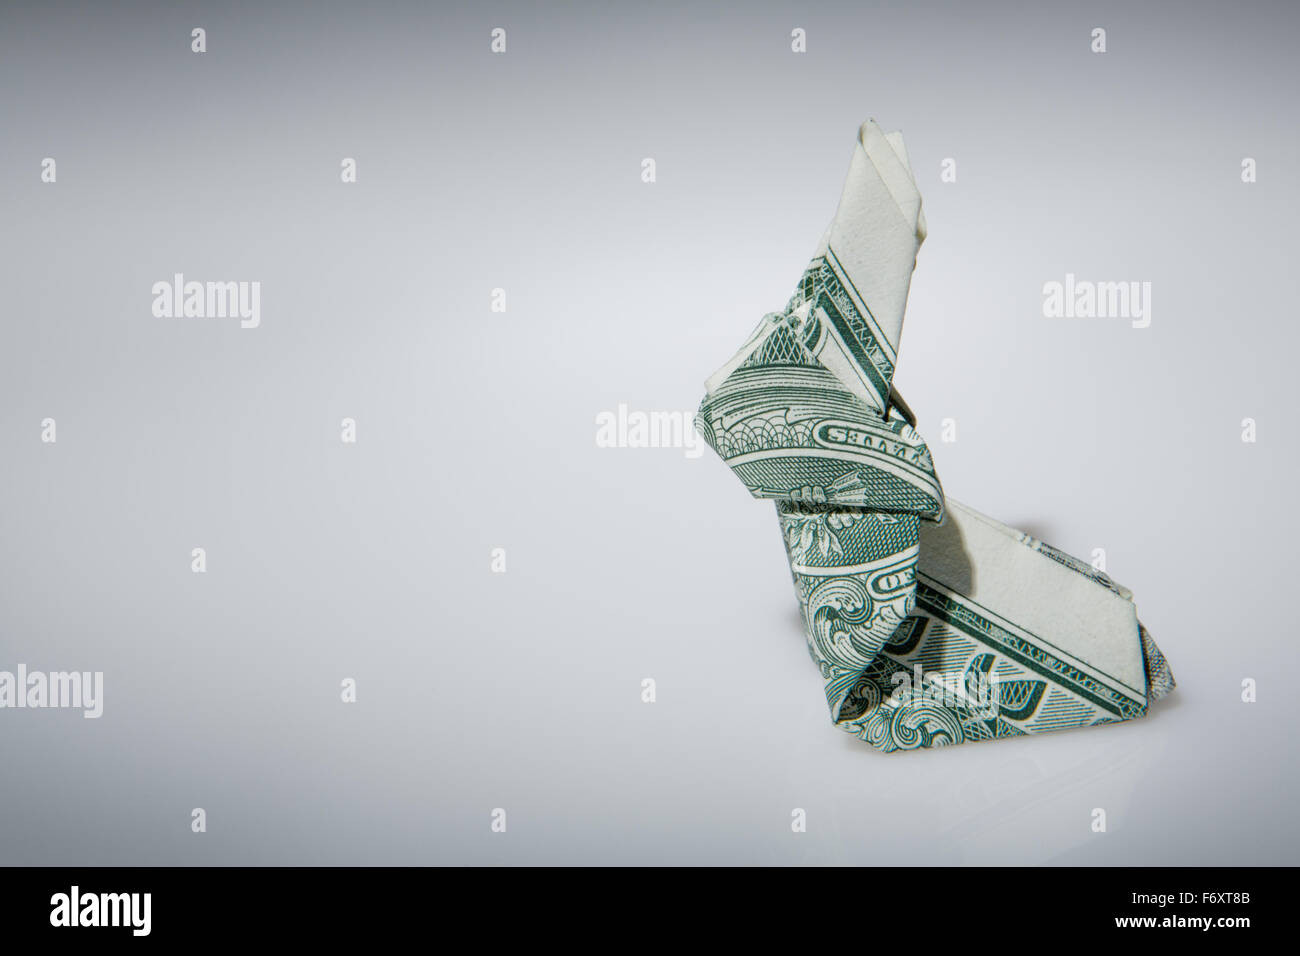 Stillleben-Bild eines Origami Hasen machen von einem US-Dollar-note Stockfoto